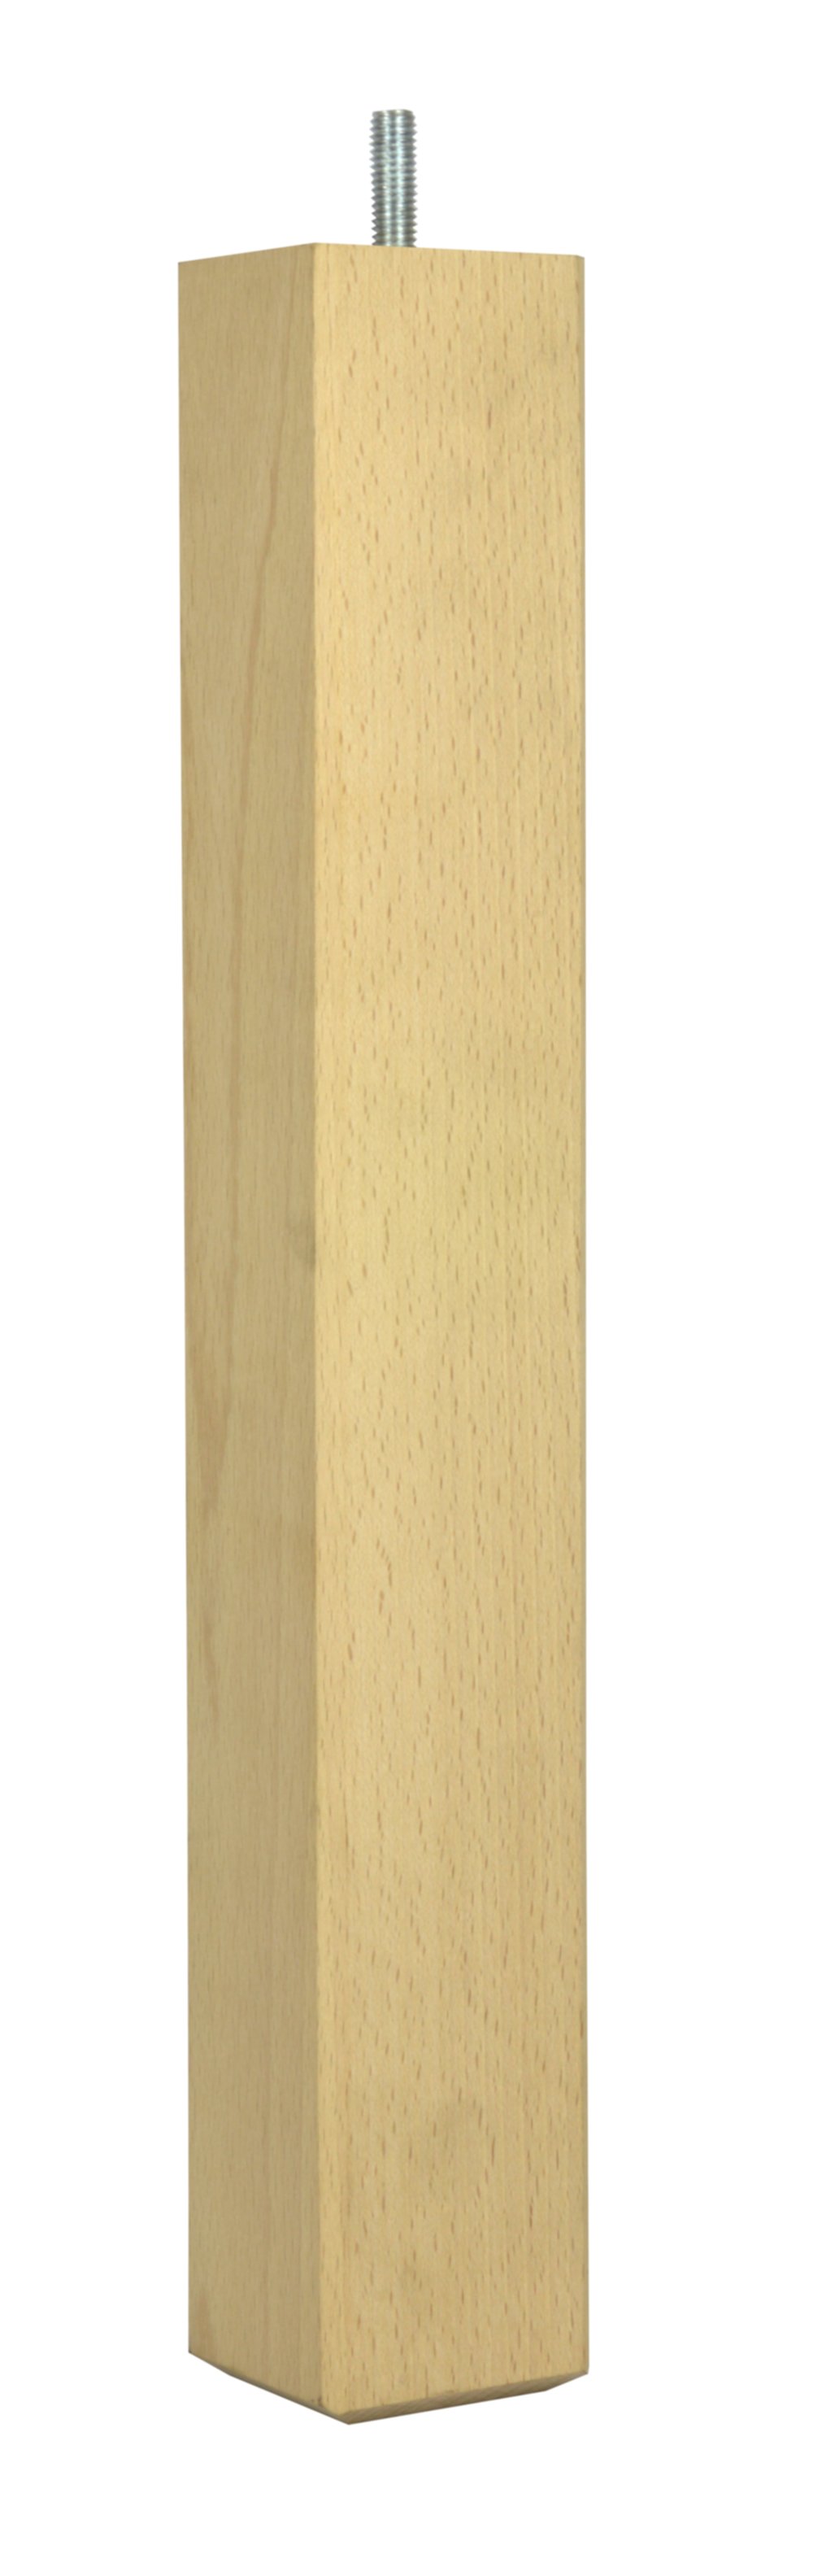 Pied de table basse carré fixe hêtre brut 55 x 55 mm H360 mm - CIME